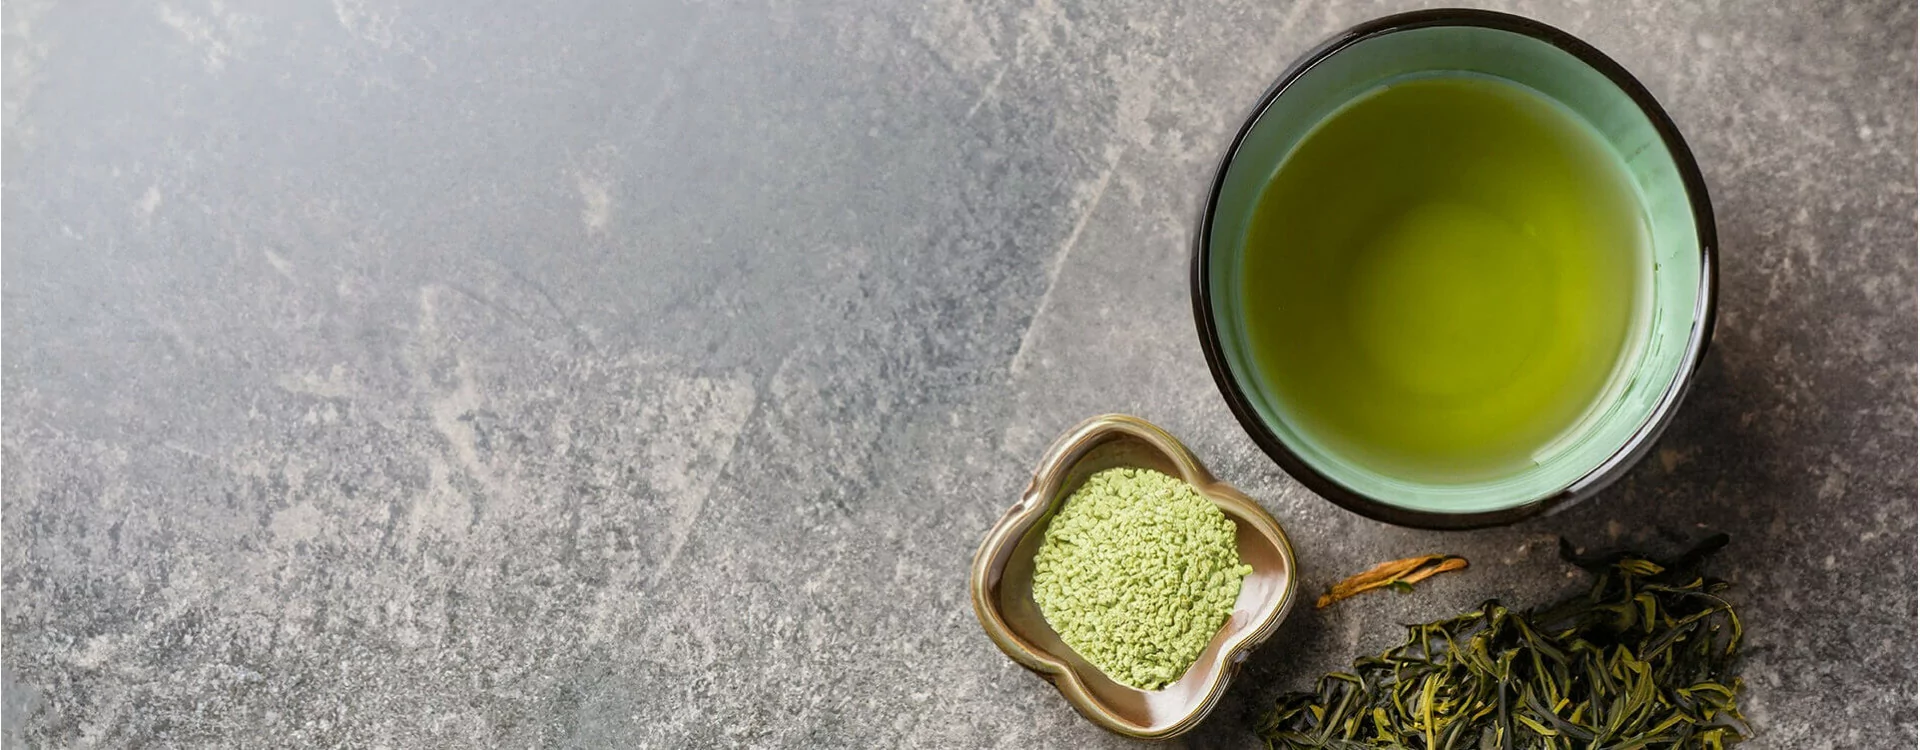 Découvrez les bienfaits du thé vert à la menthe pour la santé